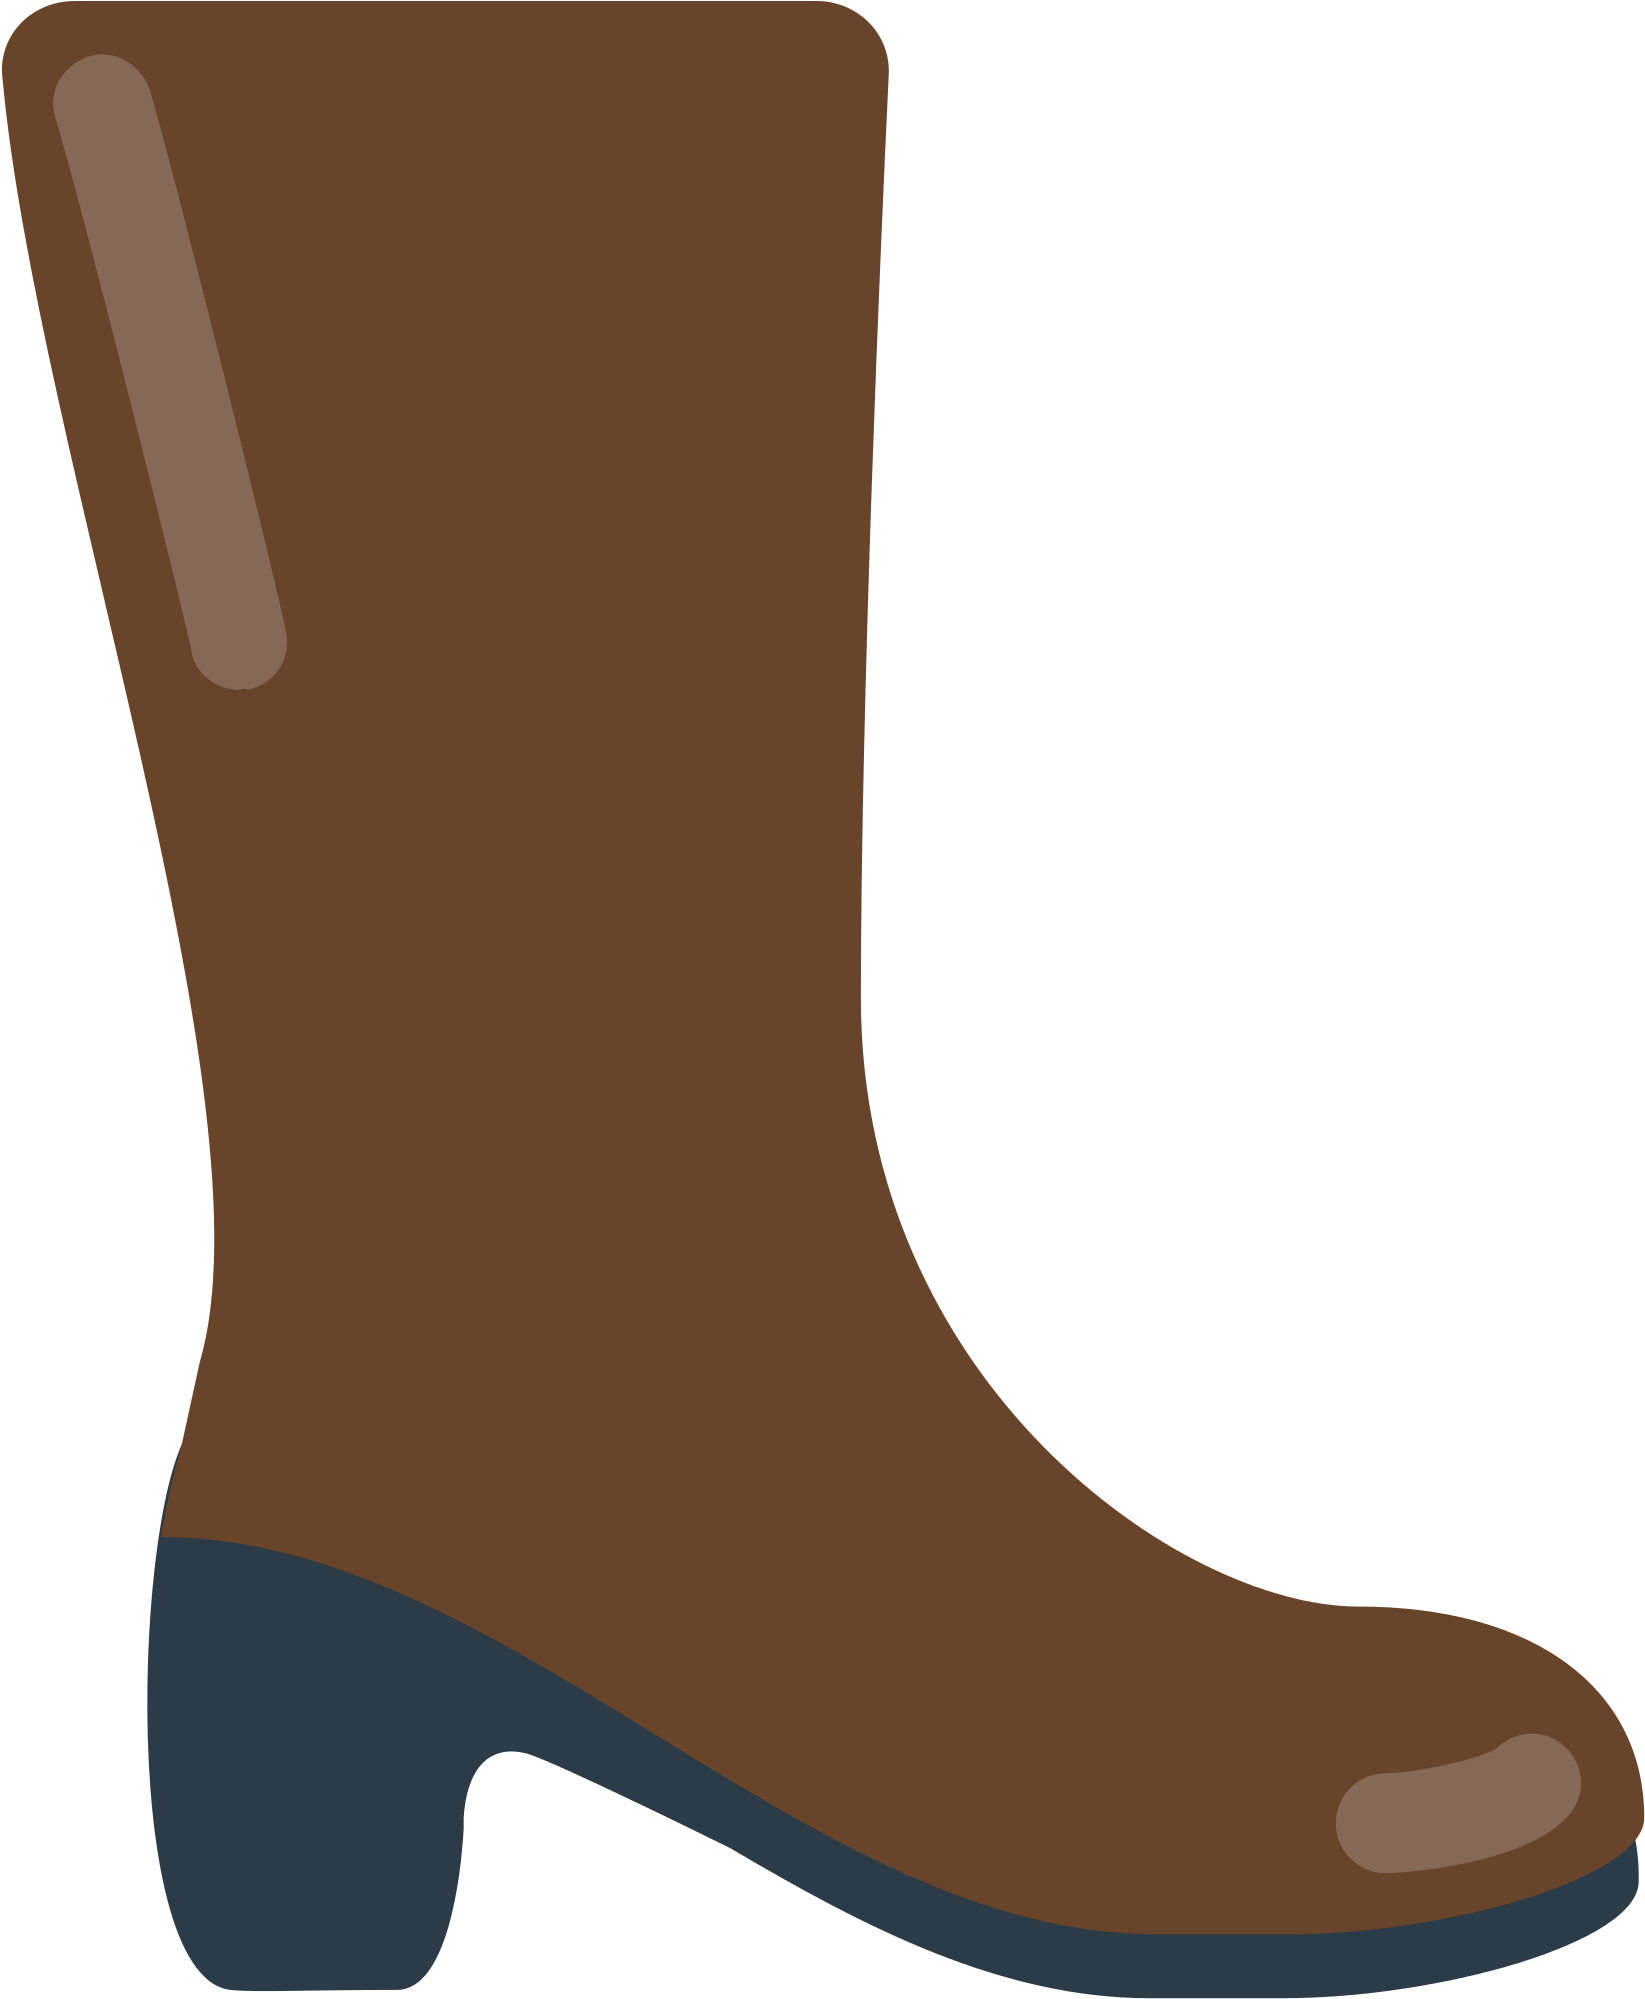 Cowboy boot emoji PNG image image